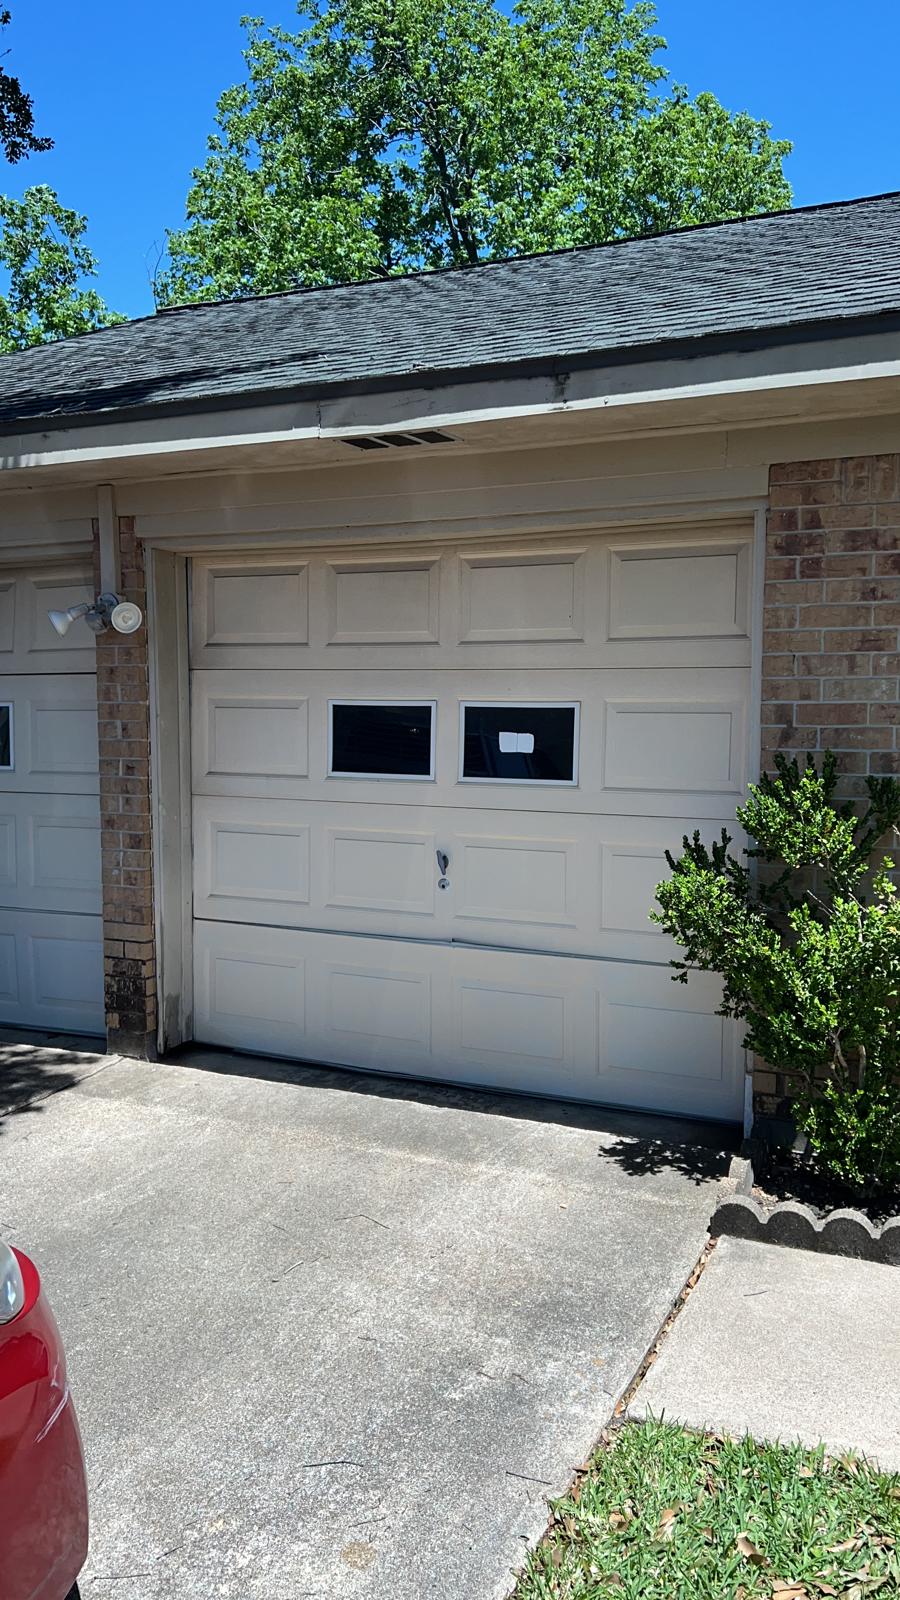 Houston Garage Door Repair